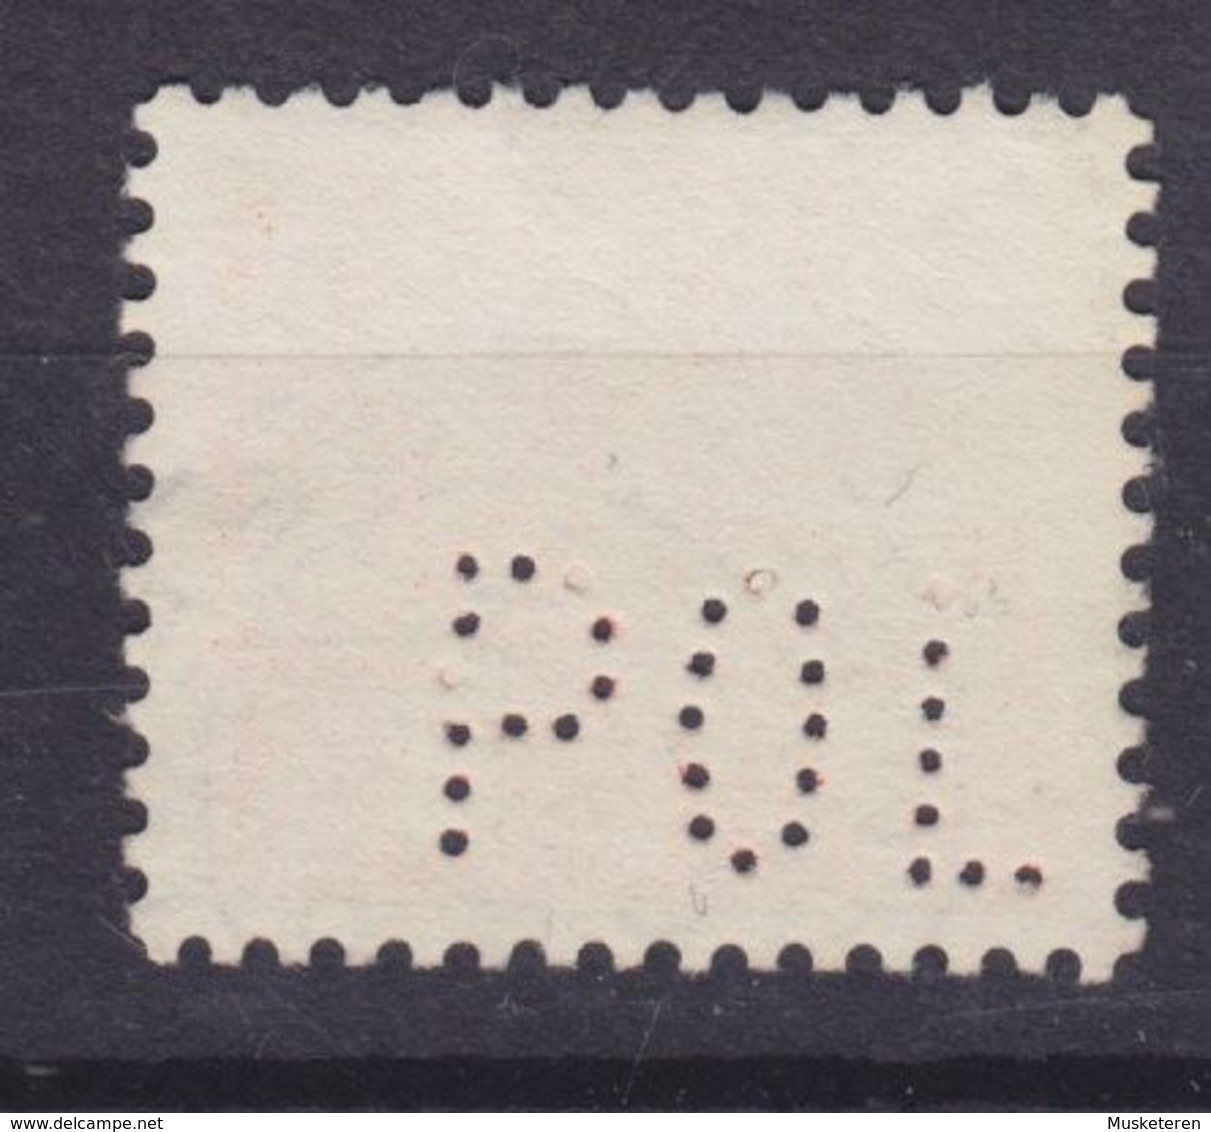 Denmark Perfin Perforé Lochung (P33) 'POL' Politikens Hus (Newspaper) Wellenlinien Stamp (2 Scans) - Abarten Und Kuriositäten